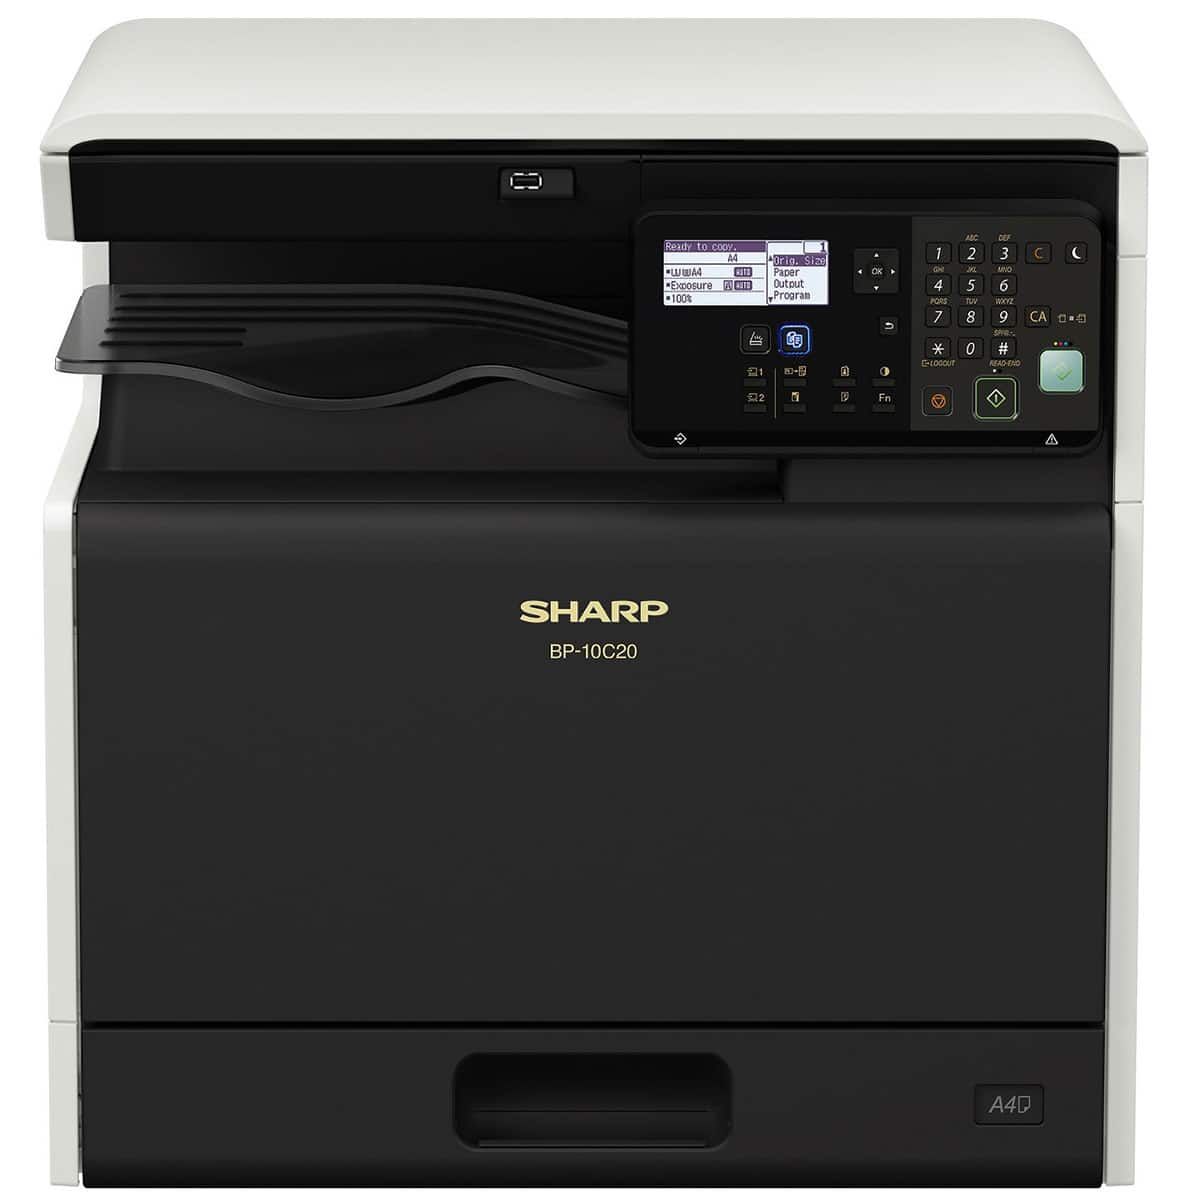 МФУ SHARP BP-10C20T A3, 20 коп/мин, принтер, сканер, копир, дуплекс, сетевой